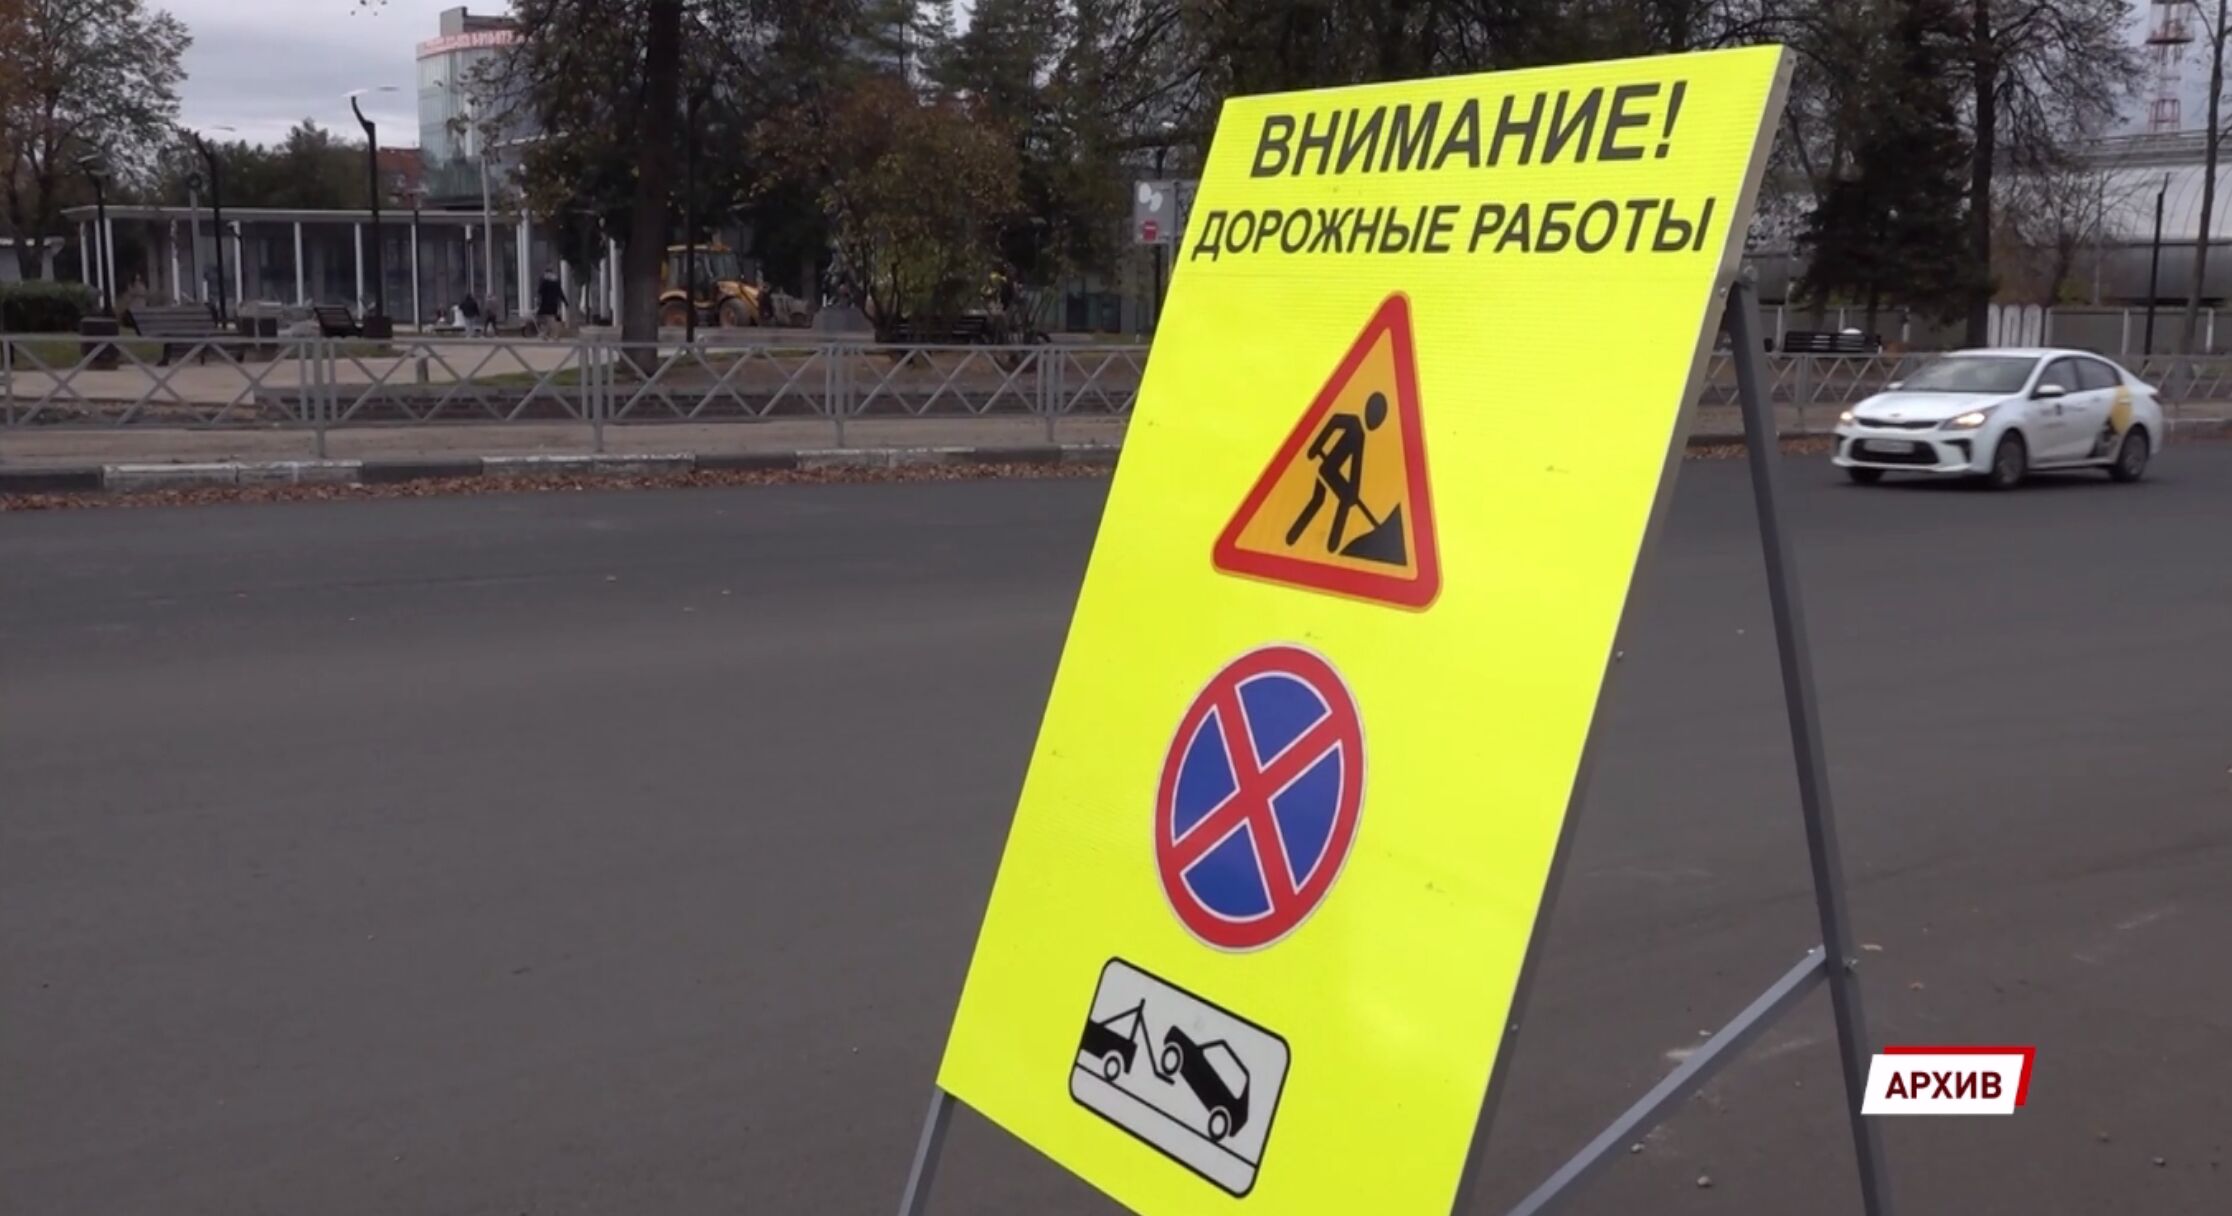 В Ярославле стало на 59 плохих дорог меньше